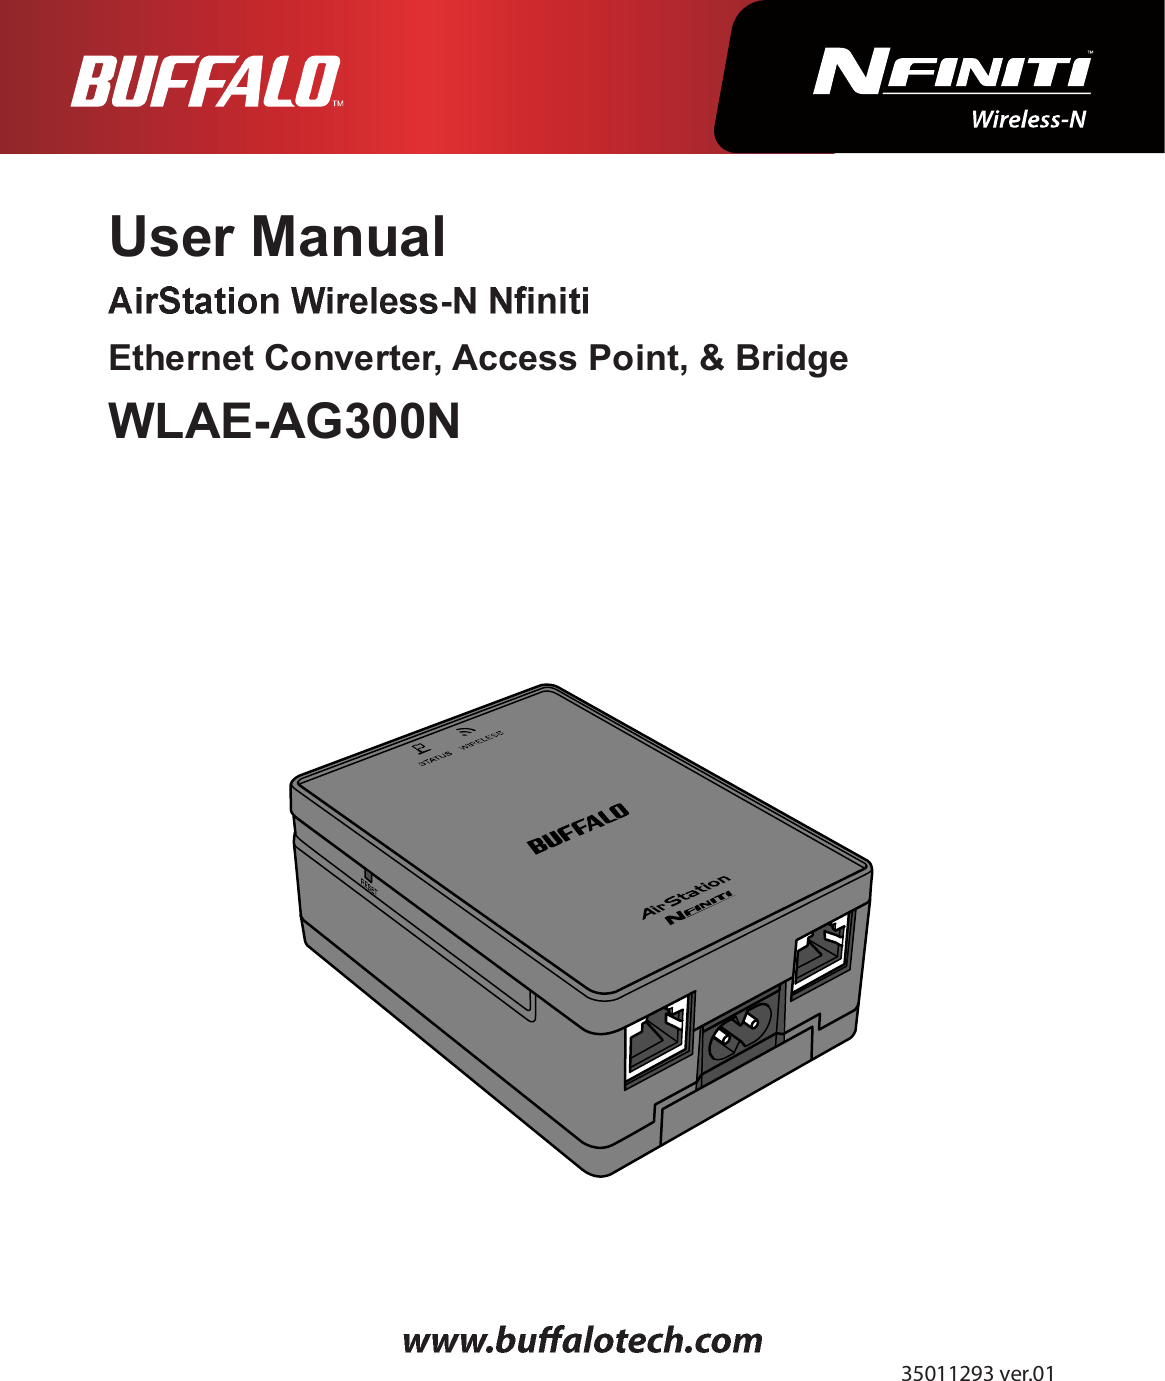 User ManualEthernet Converter, Access Point, &amp; BridgeWLAE-AG300Níëðïïîçí ª»®òðï